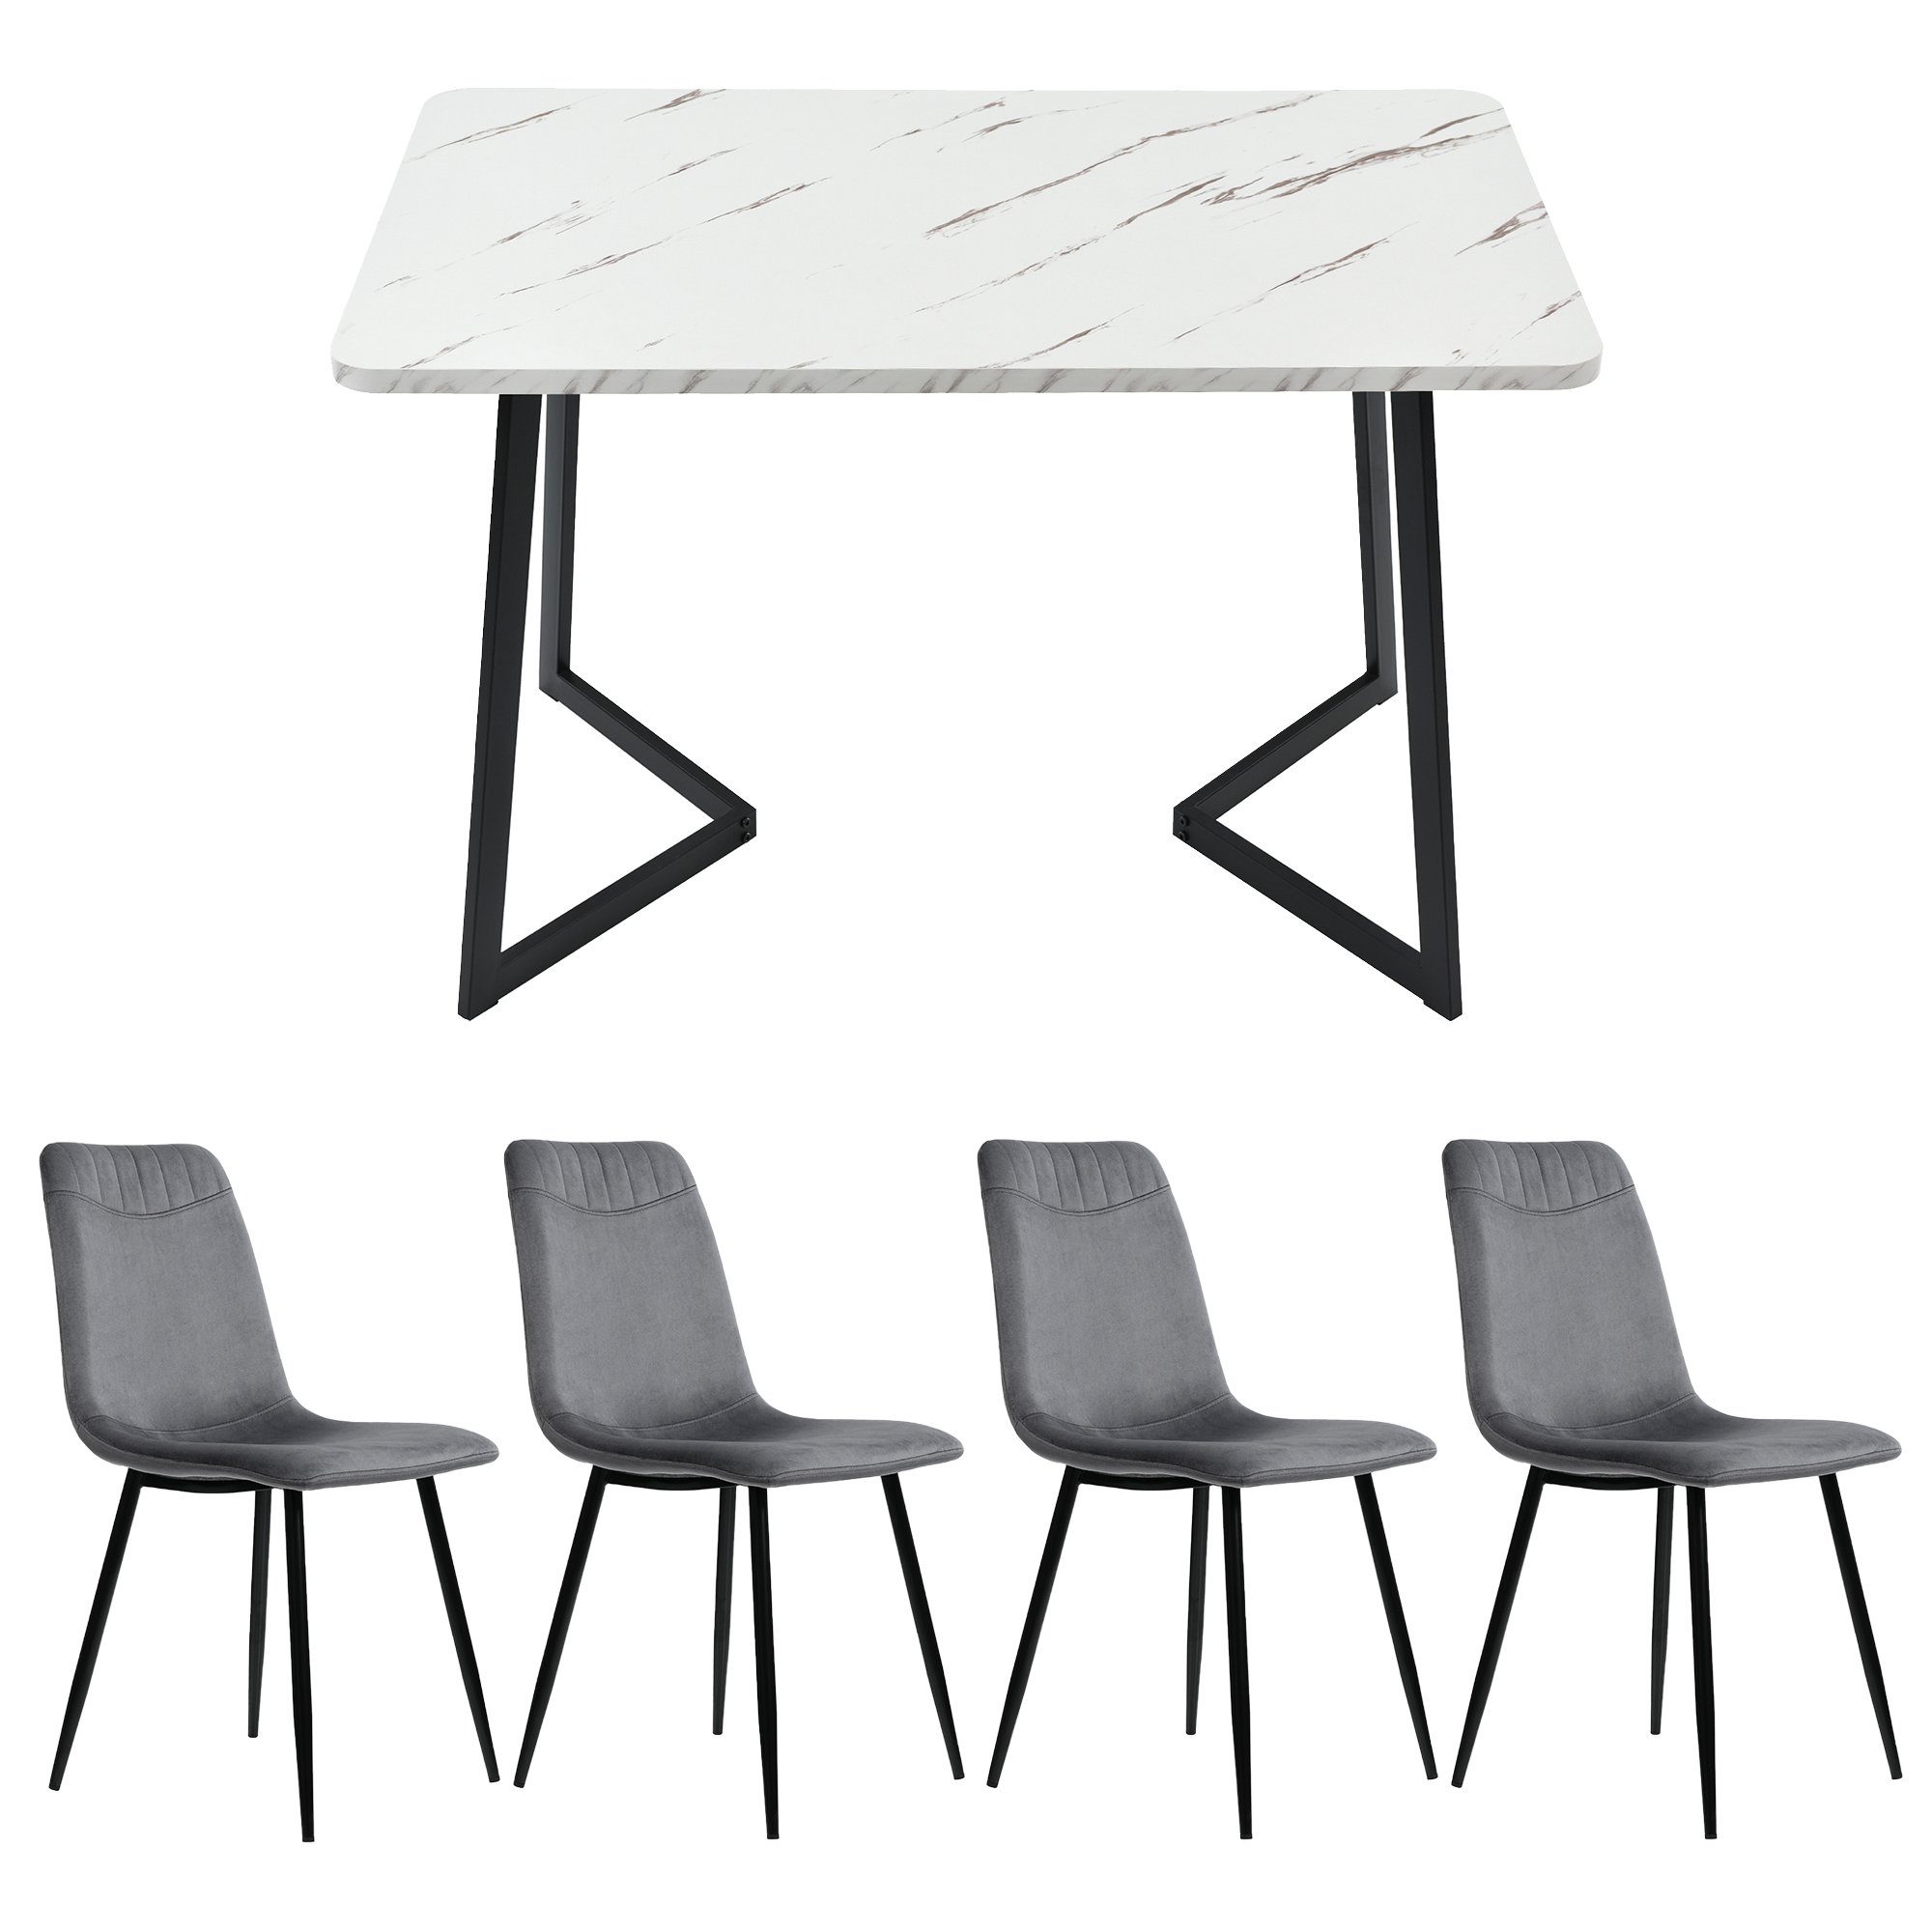 DOTMALL Esstisch Esstisch und Stuhl Set (1+4), moderner Esstisch und Stuhl Set